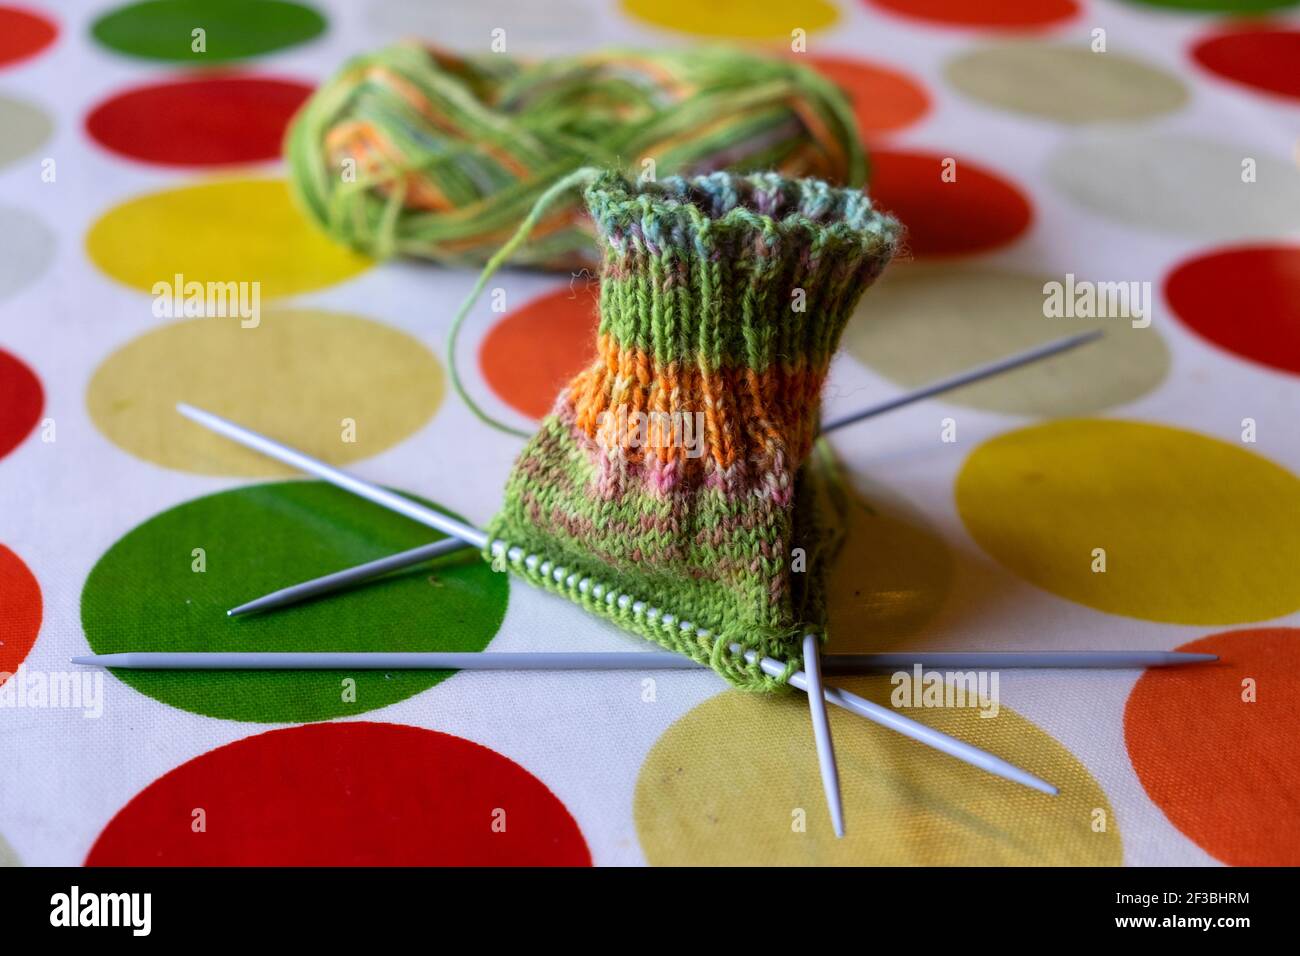 Chaussette verte et orange tricotée sur 4 aiguilles à tricoter sur une nappe en toile d'huile, tachegloth orange vert jaune cercles R.-U. KATHY DEWITT Banque D'Images